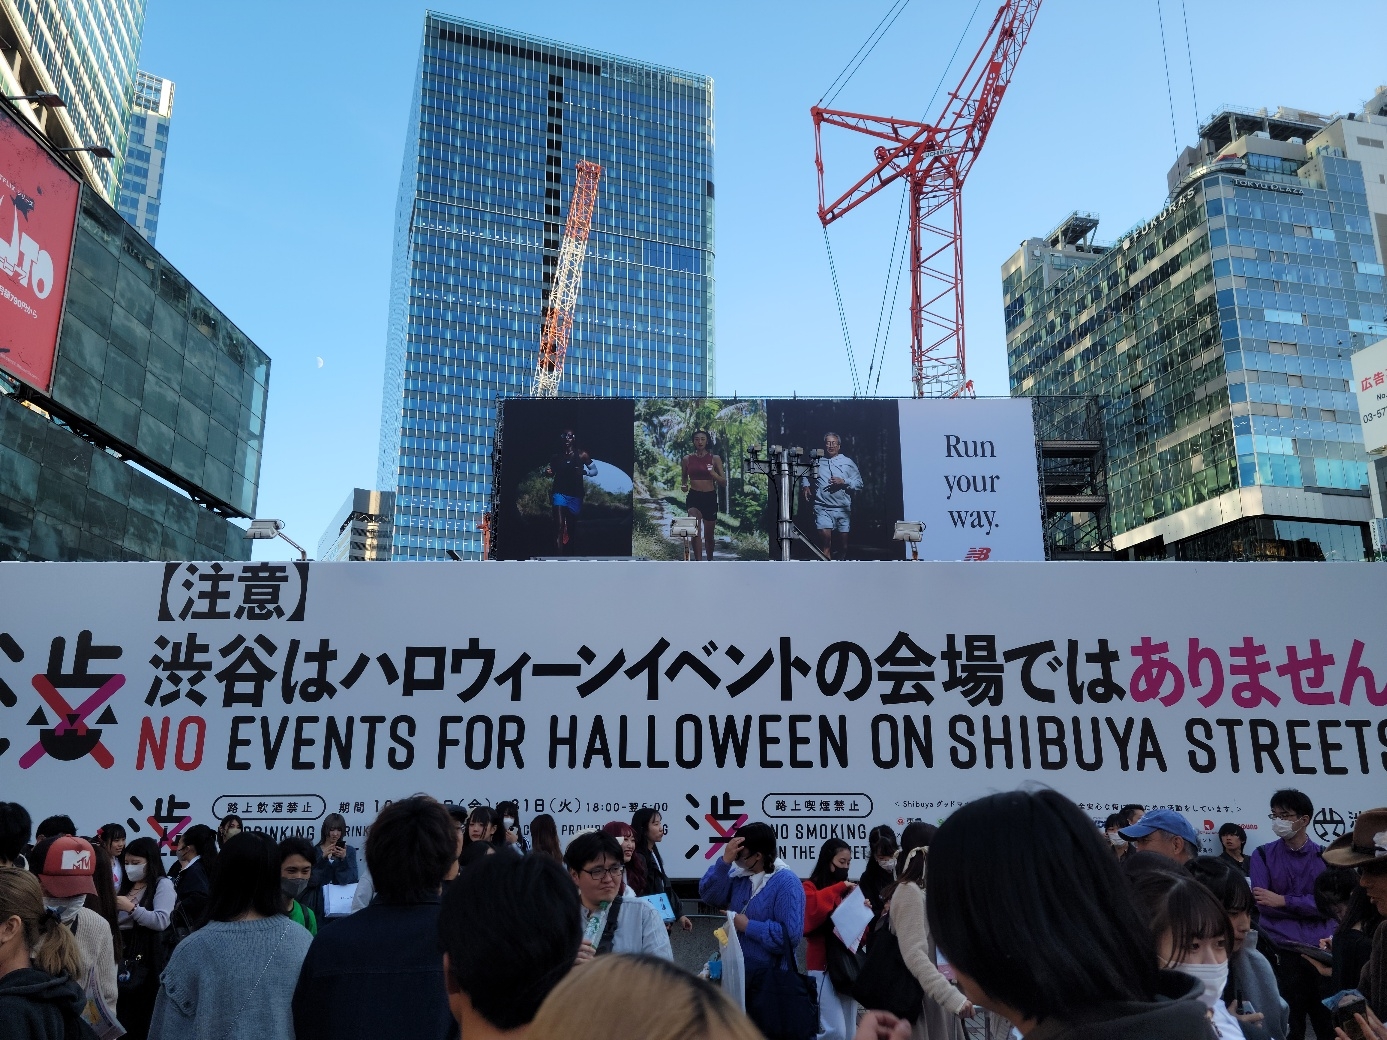 22일 일본 최대 번화가인 도쿄 시부야역 앞에 핼러윈 기간 시부야를 방문하지 말아 달라는 경고판이 설치돼 있다.